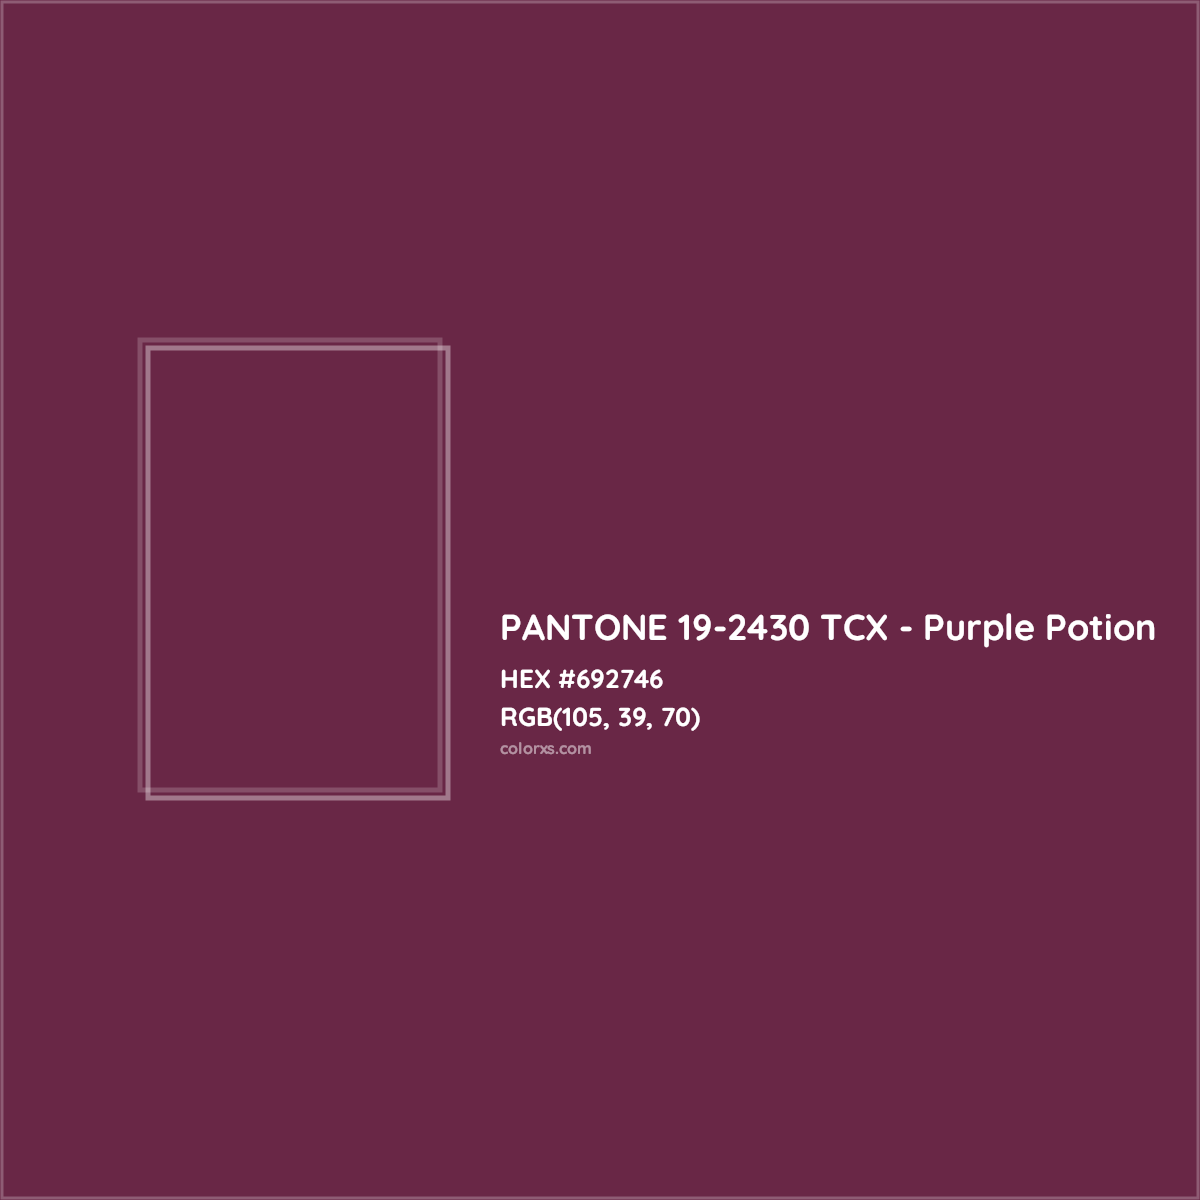 HEX #692746 PANTONE 19-2430 TCX - Purple Potion CMS Pantone TCX - Color Code